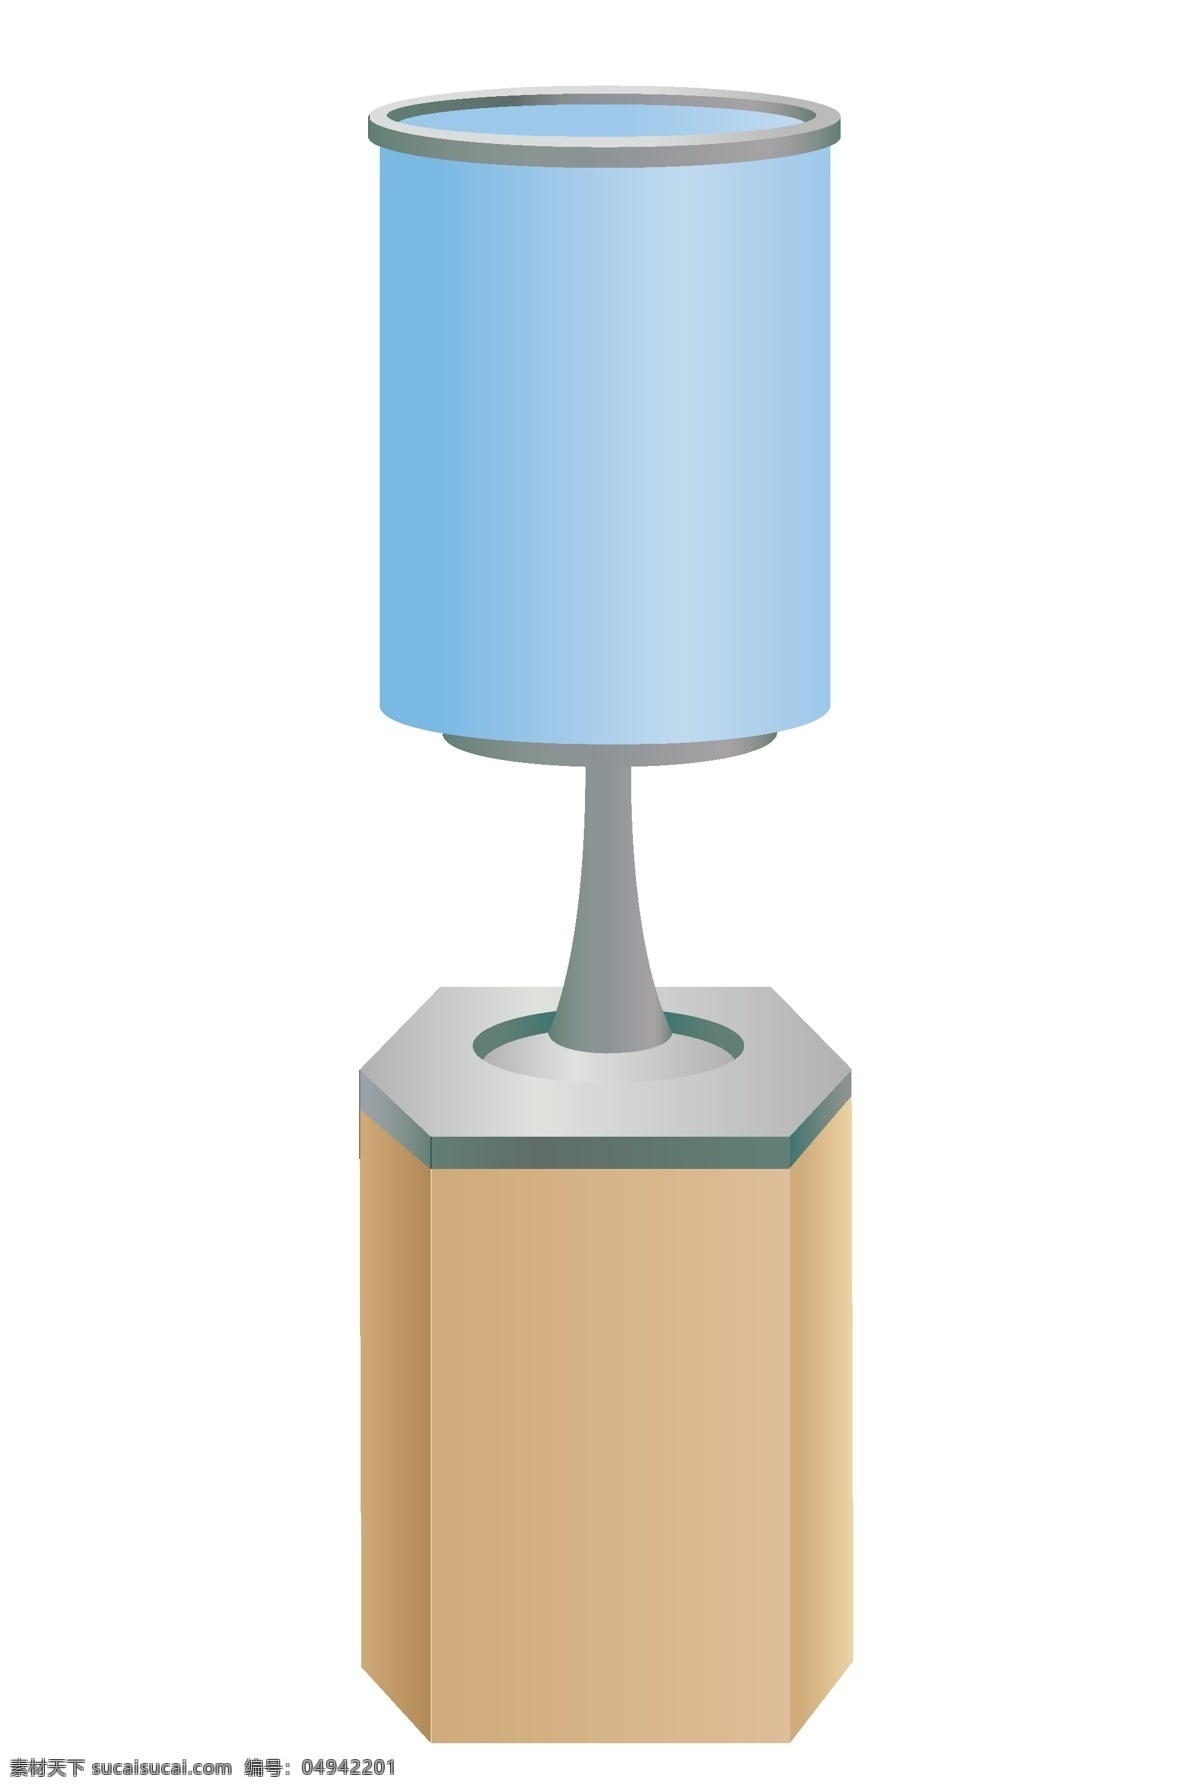 蓝色台灯电器 木质腿 蓝色台灯 电器